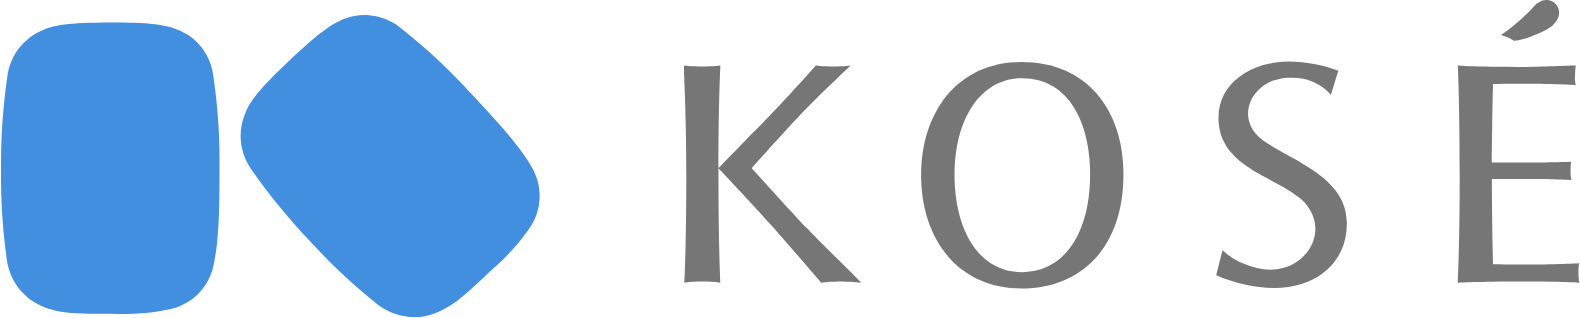 Kosé
 logo large (transparent PNG)